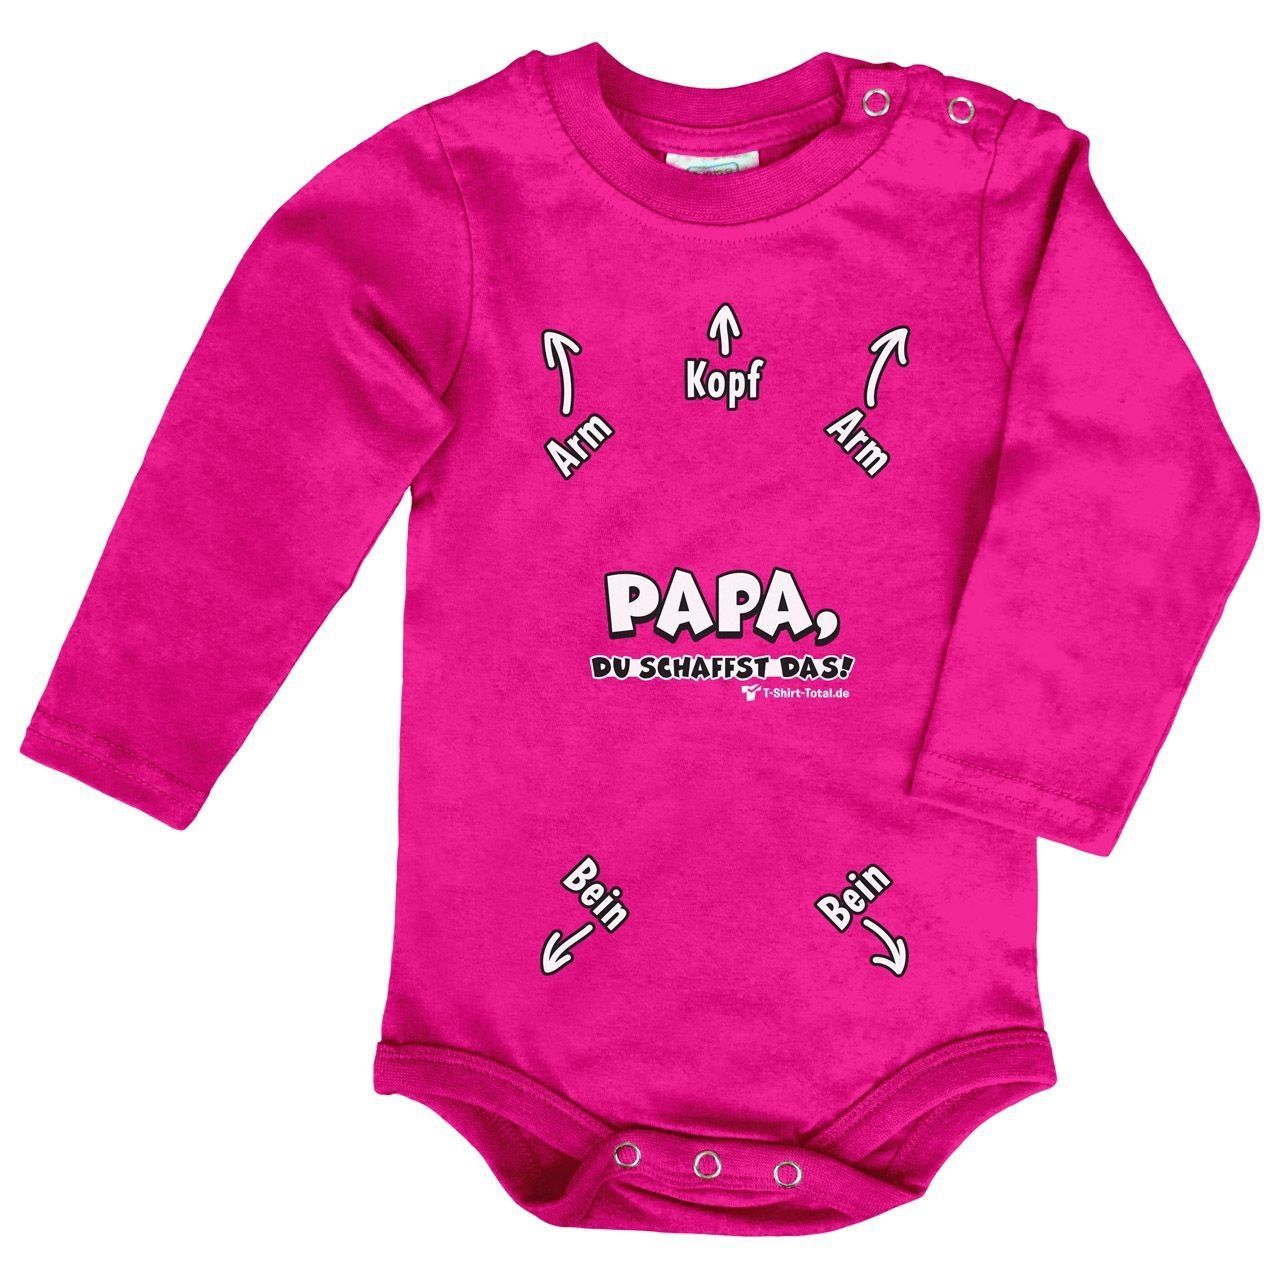 Papa du schaffst das Baby Body Langarm pink 56 / 62